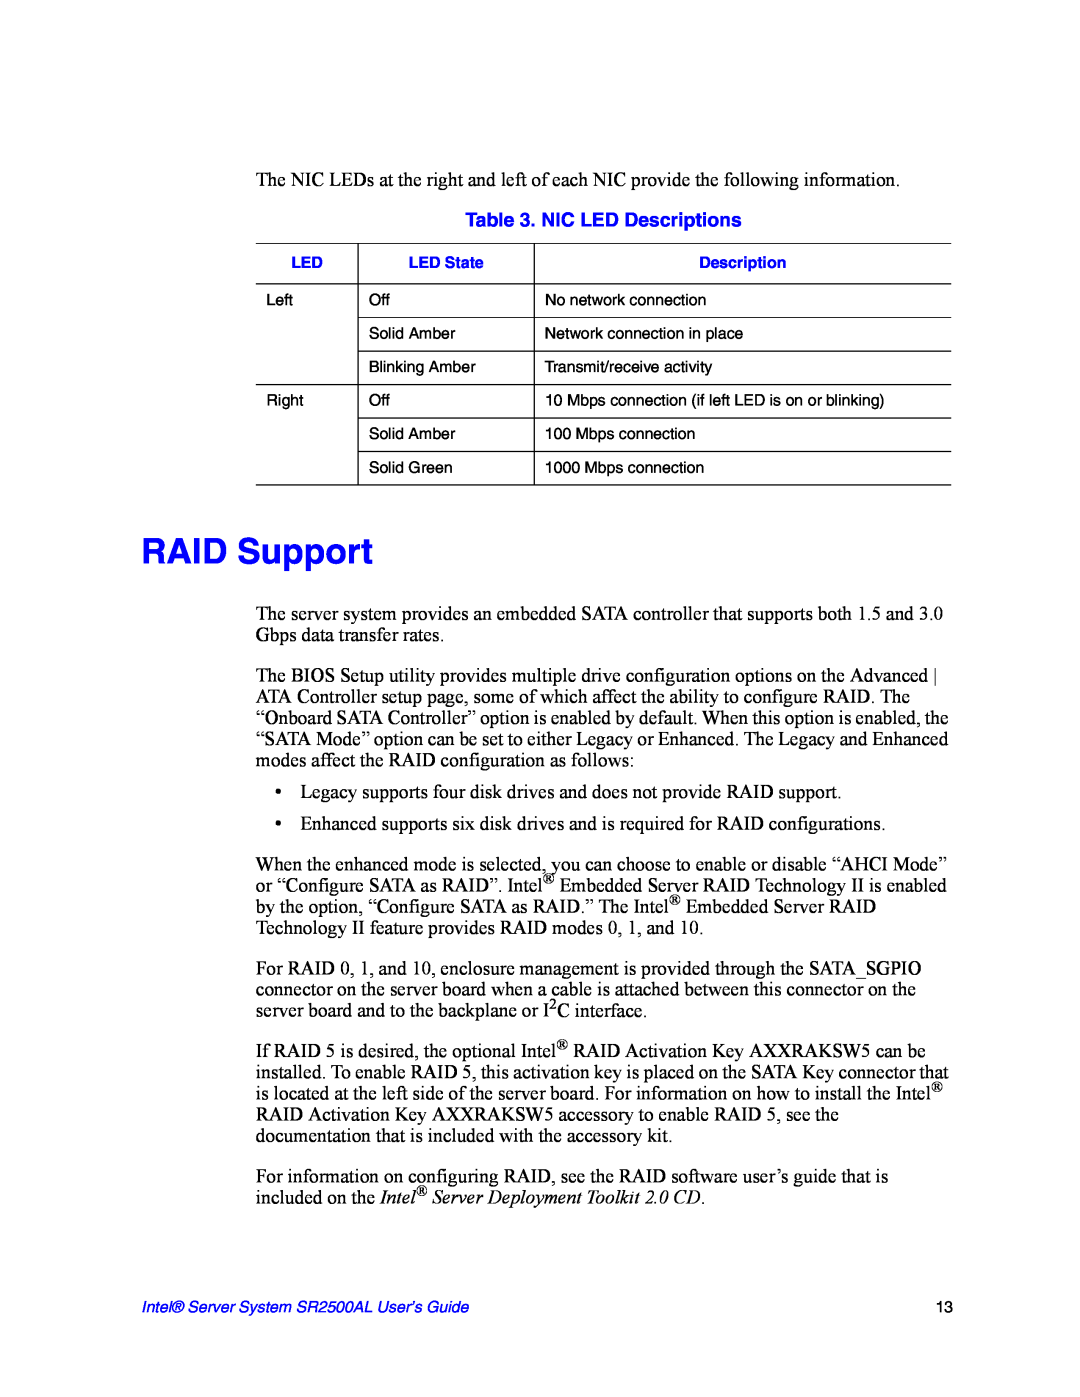 Intel SR2500AL manual RAID Support, NIC LED Descriptions 